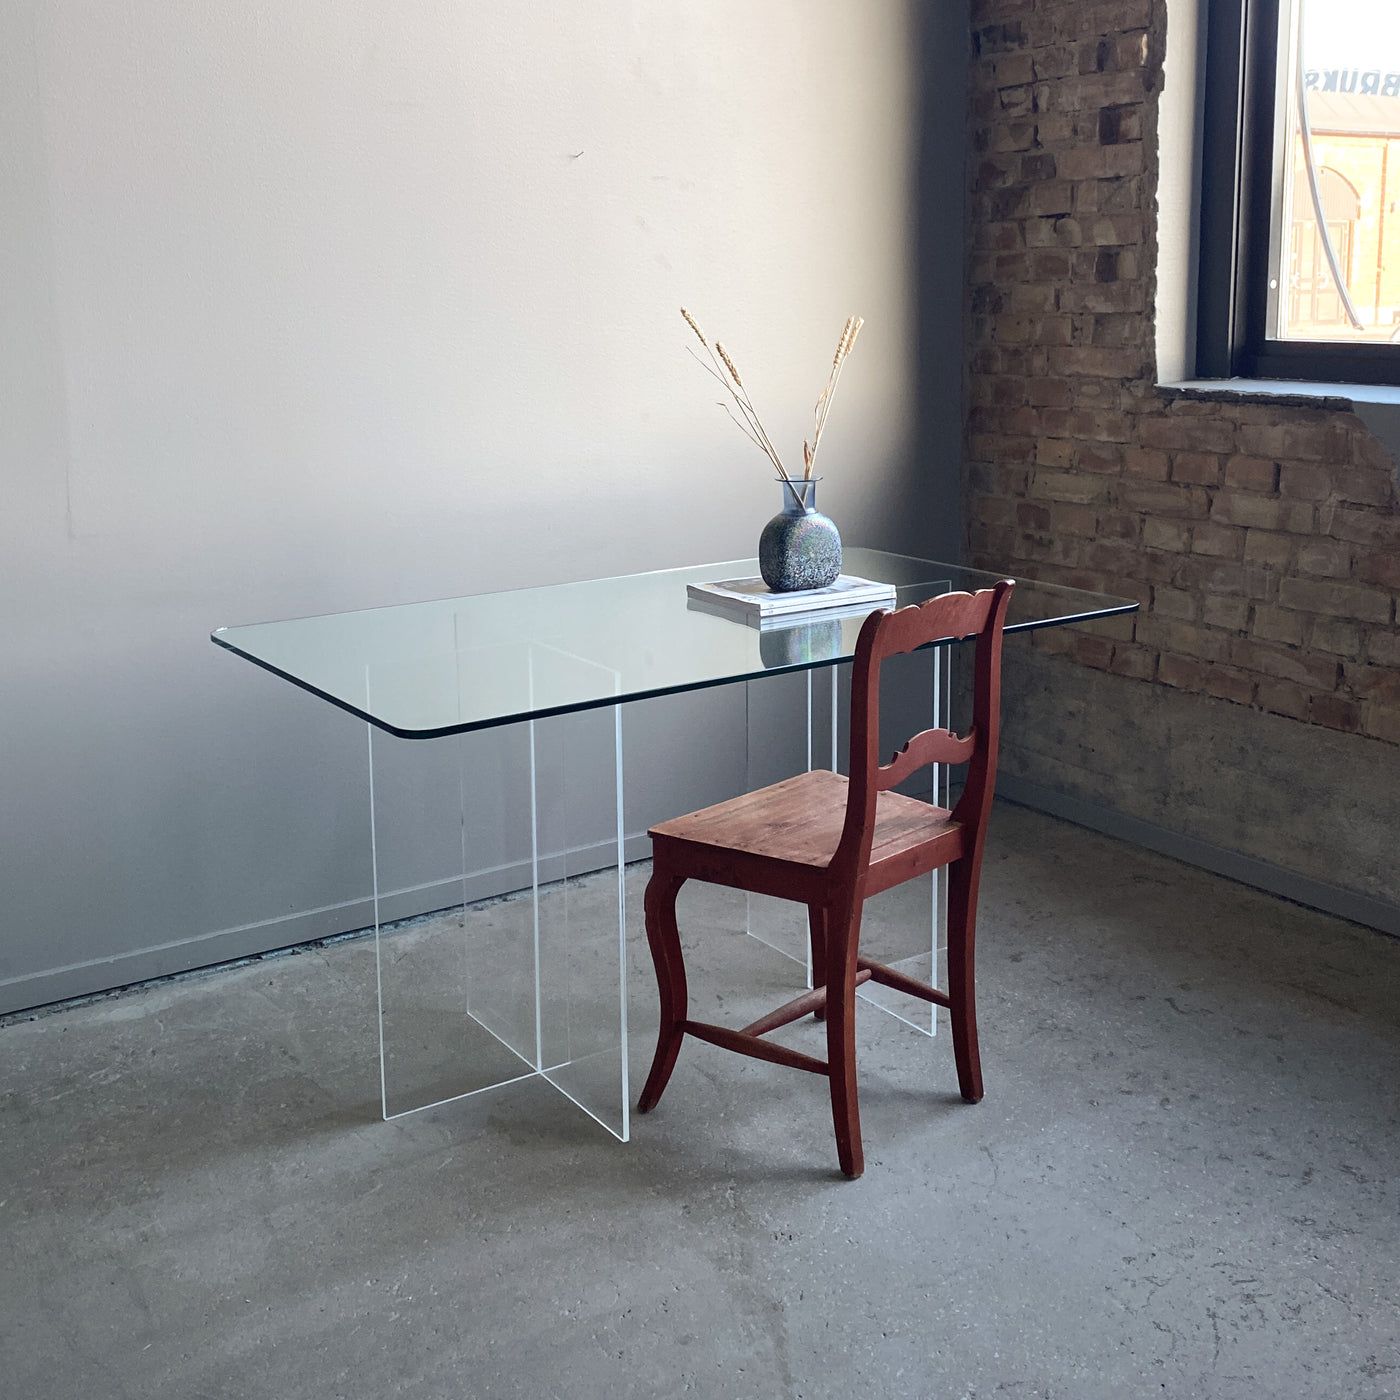 Matbord/skrivbord i glas